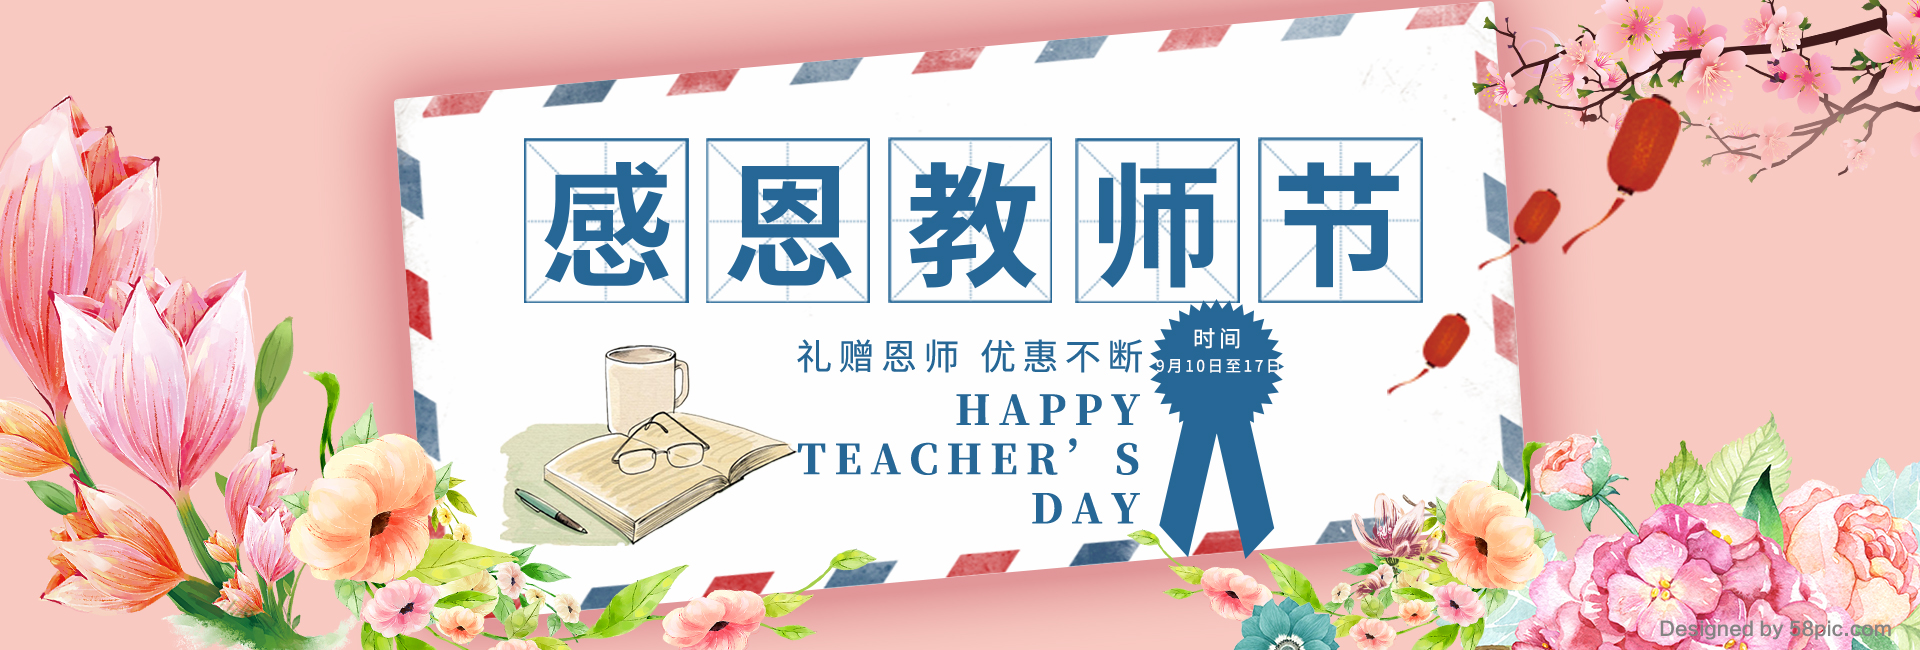 教师节活动封面图.jpg